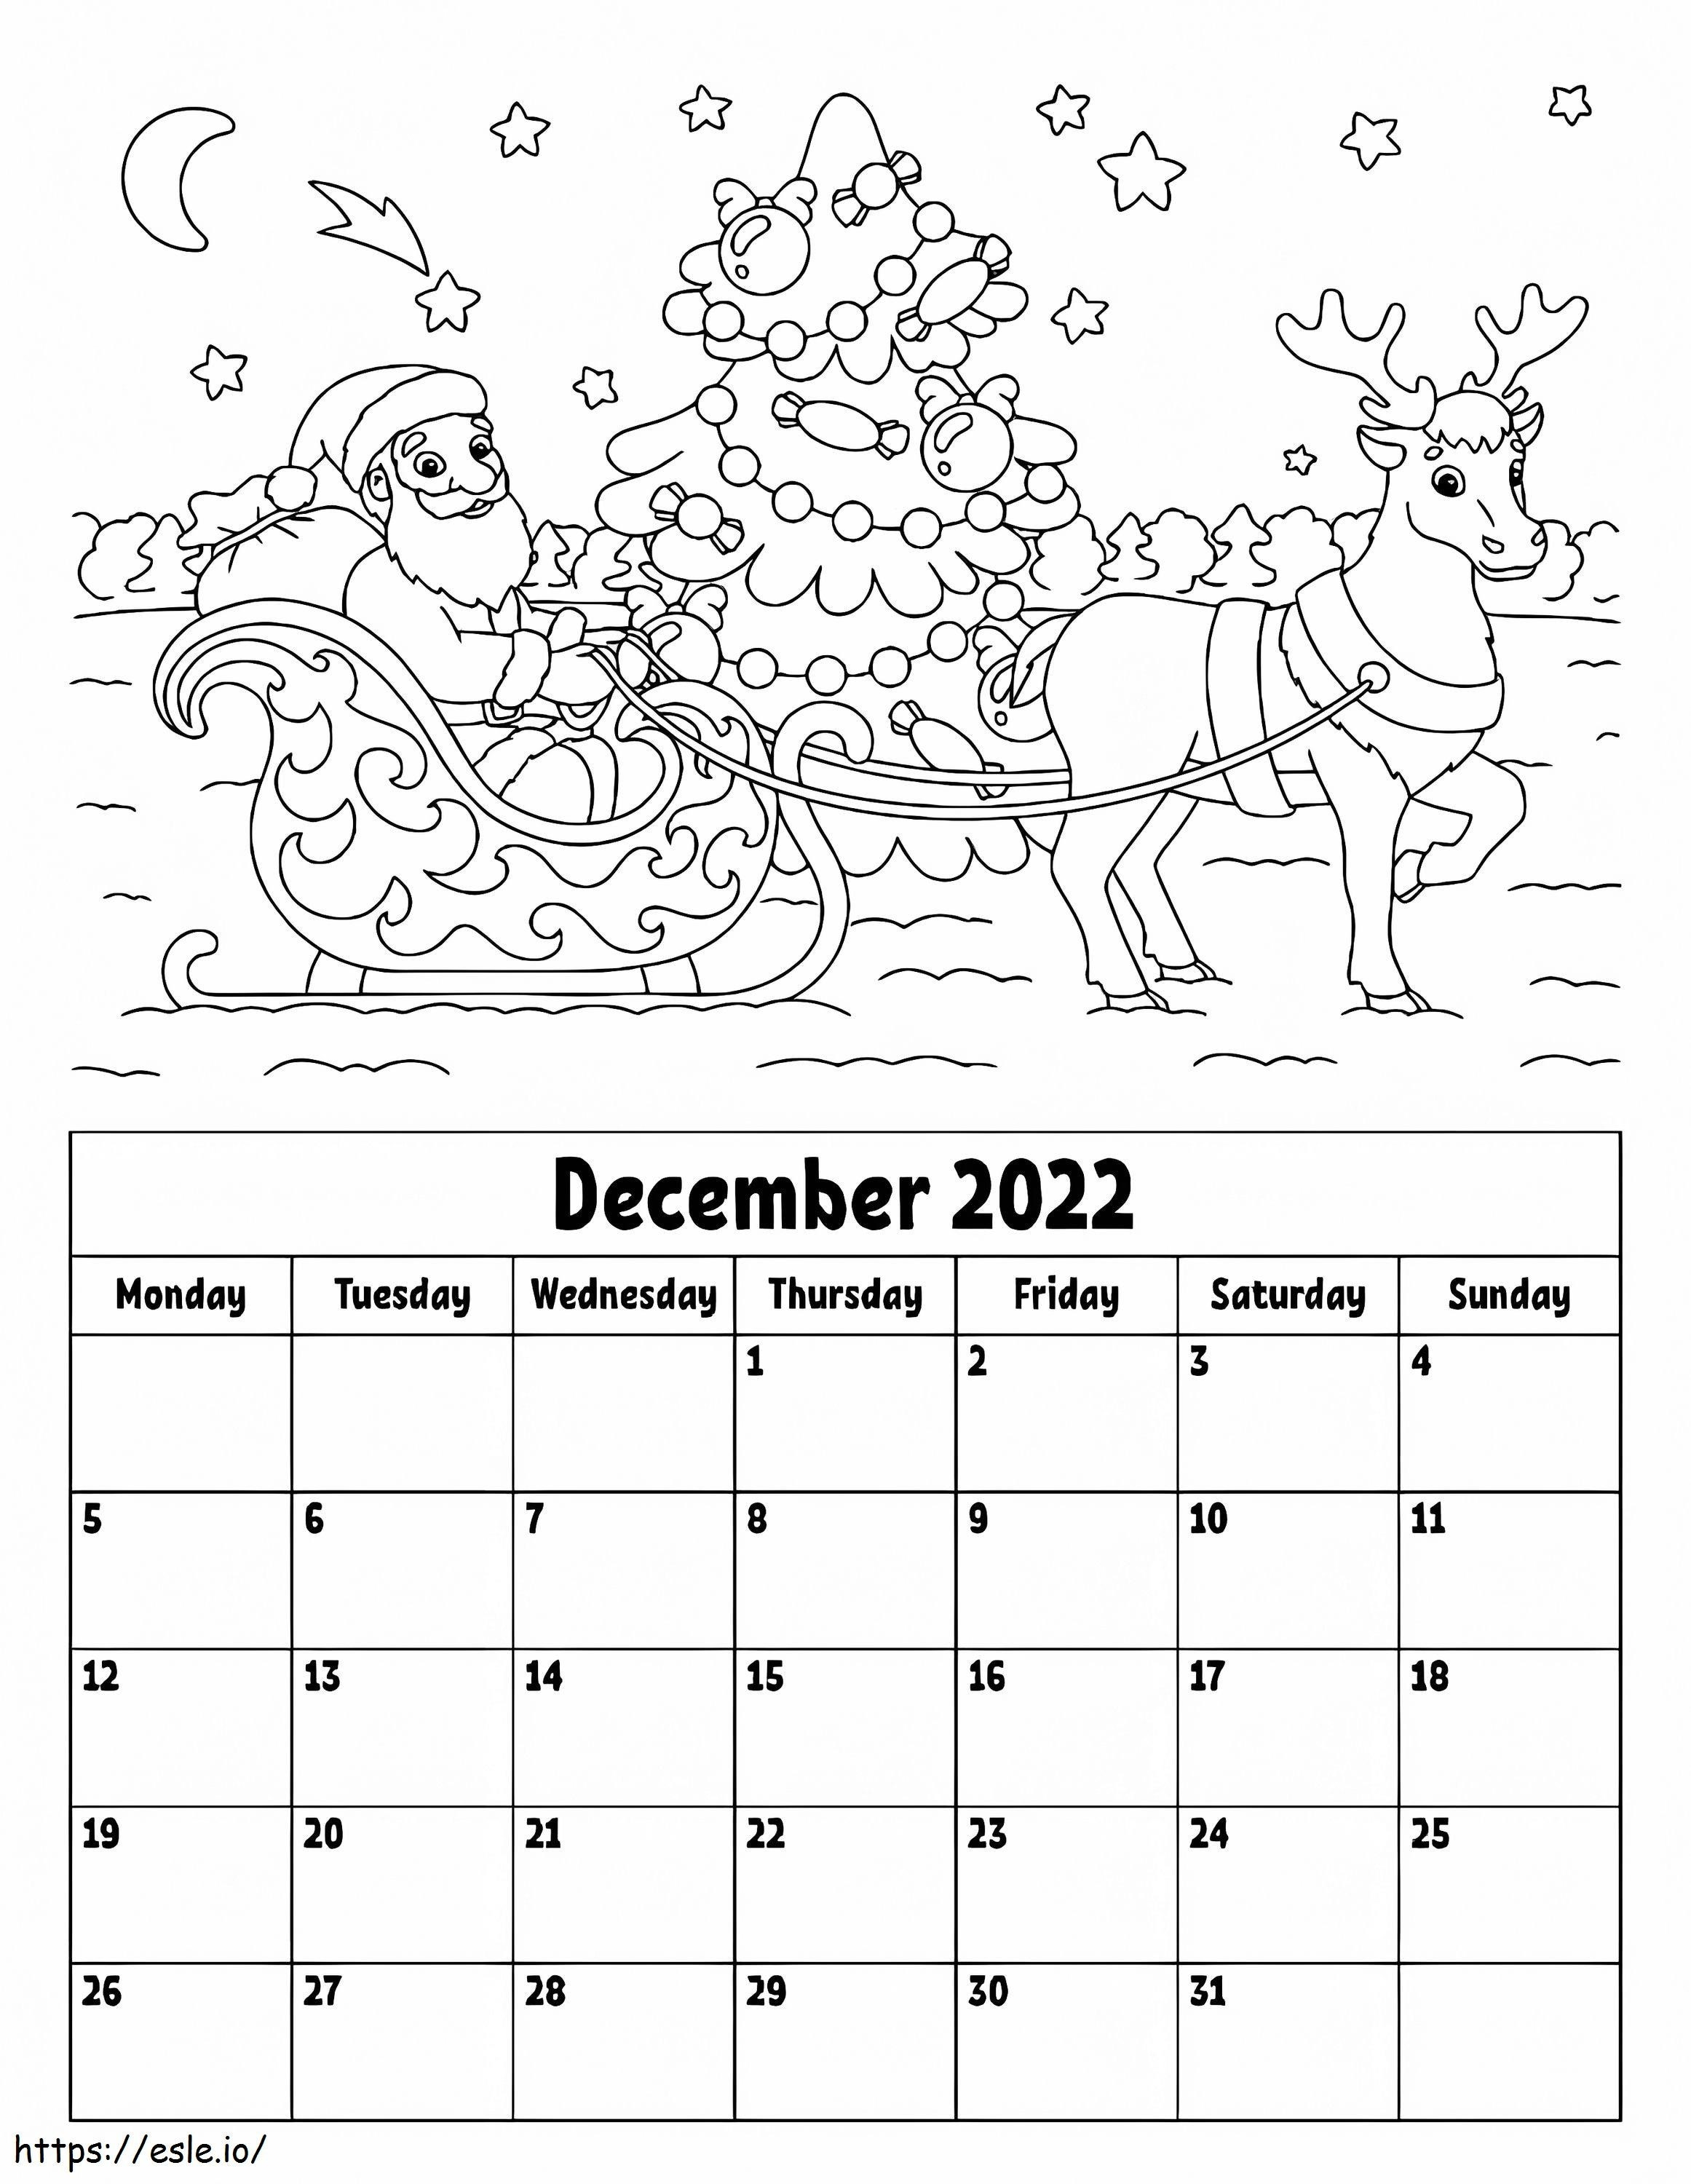 Aralık 2022 Takvimi boyama